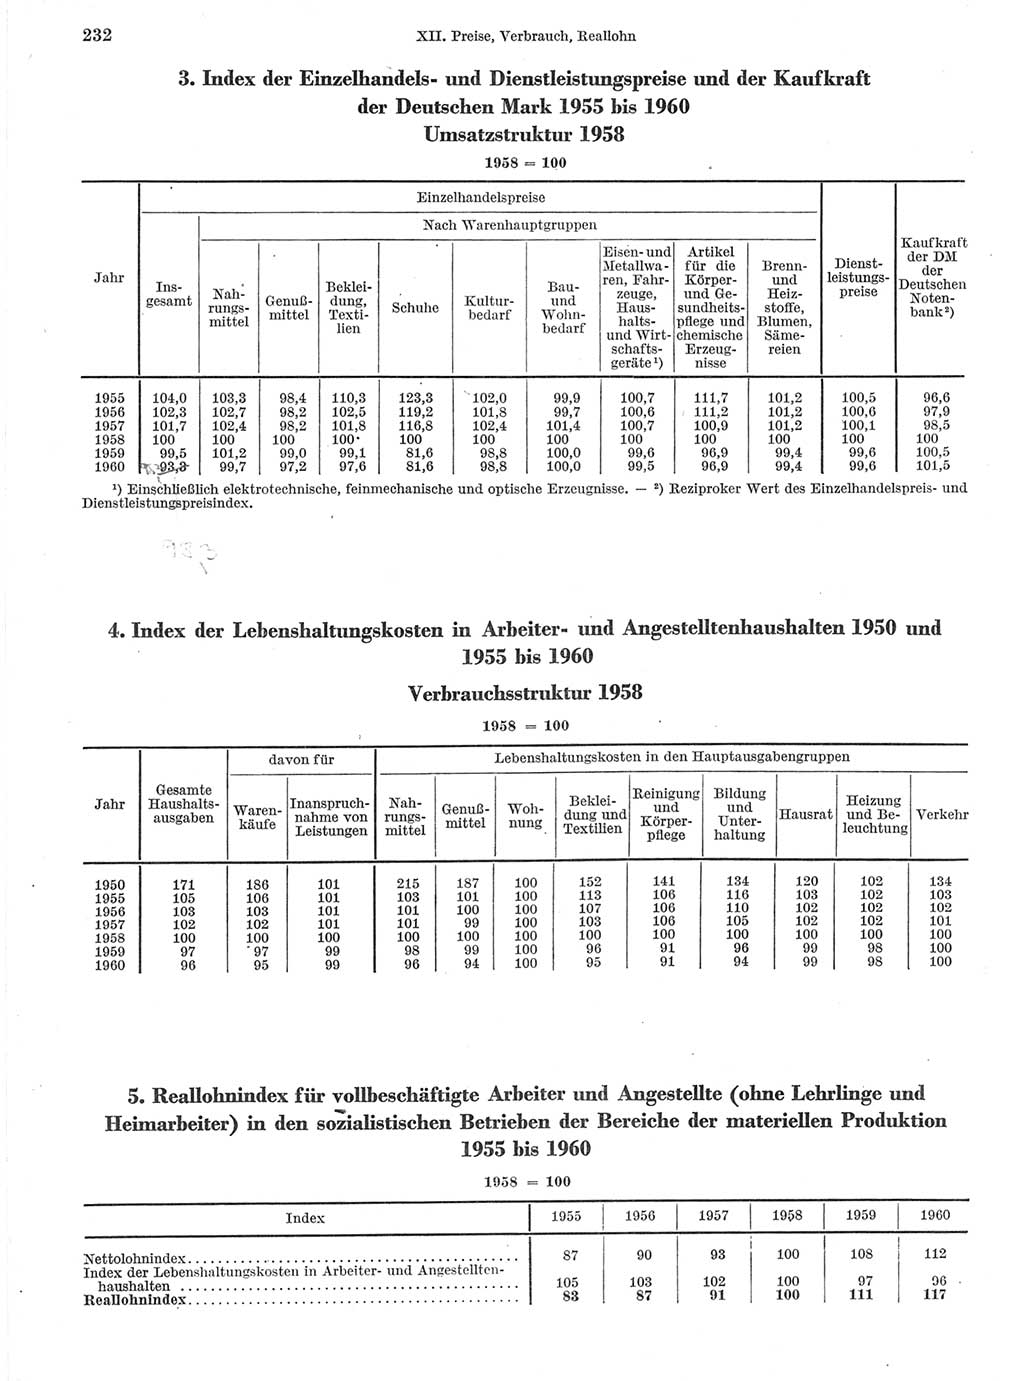 Statistisches Jahrbuch der Deutschen Demokratischen Republik (DDR) 1960-1961, Seite 232 (Stat. Jb. DDR 1960-1961, S. 232)